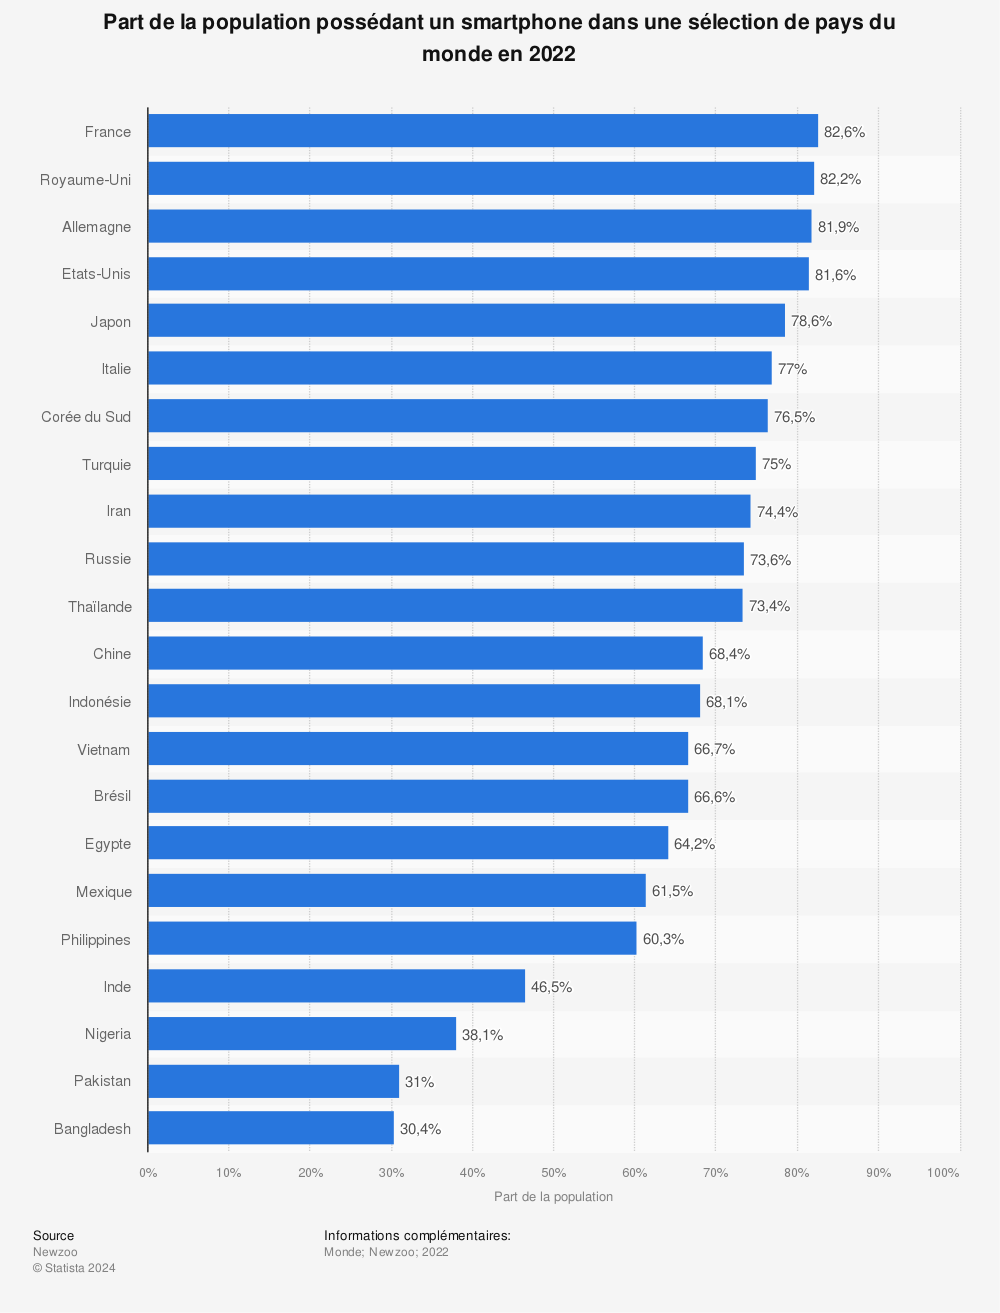 Statistique: Part de la population possédant un smartphone dans une sélection de pays en 2021 | Statista